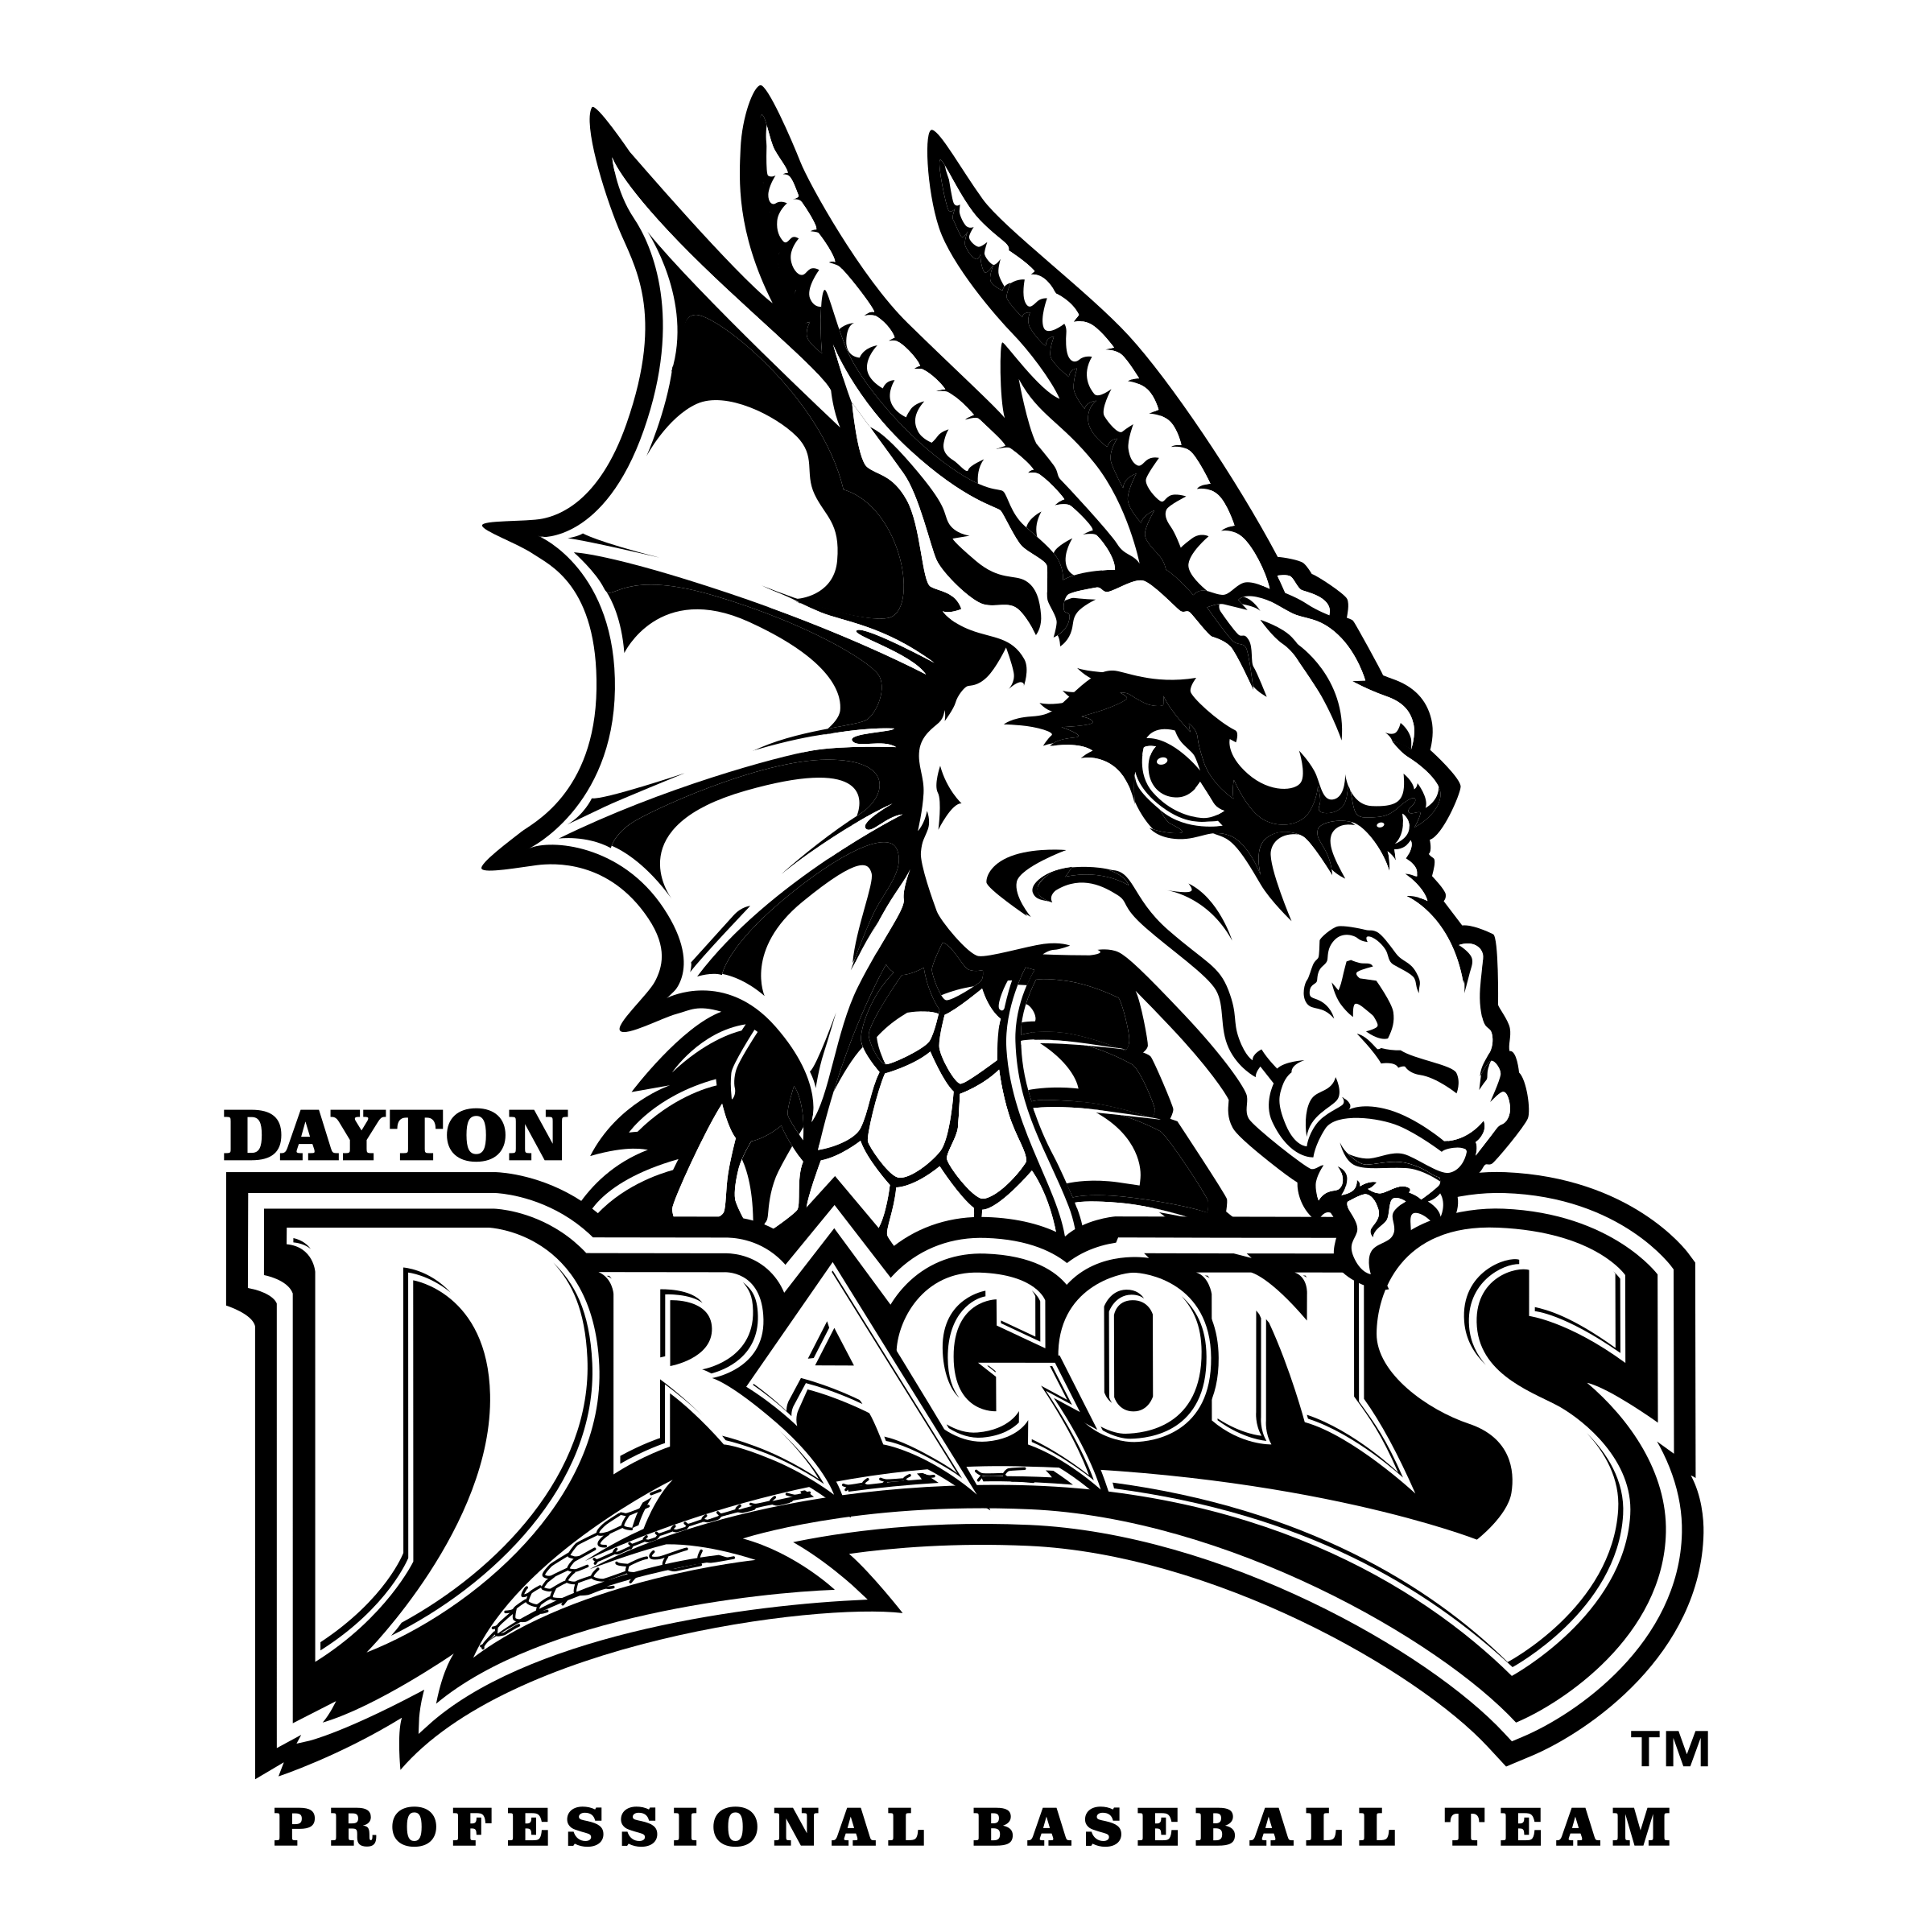 Dayton Dragons Logo - Dayton Dragons Logo PNG Transparent & SVG Vector